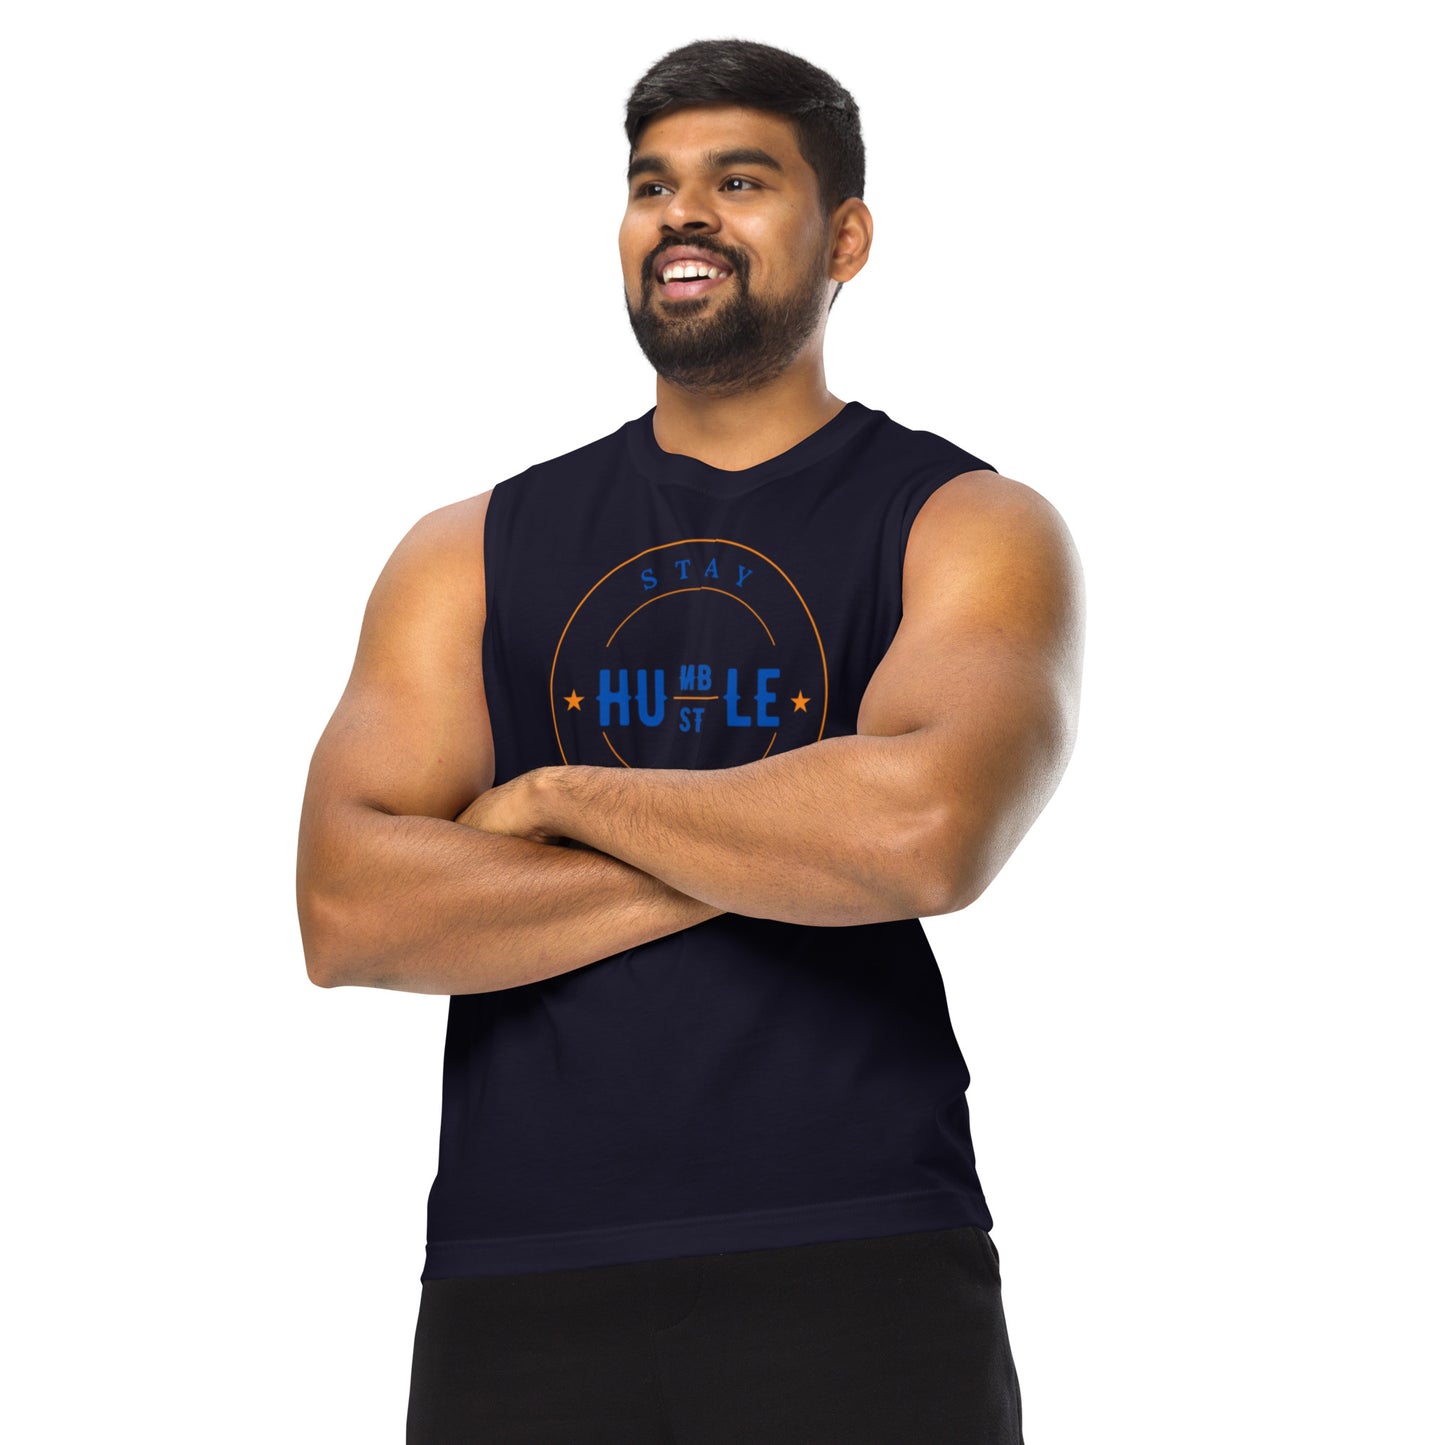 Humble/Hustle Muscle Shirt